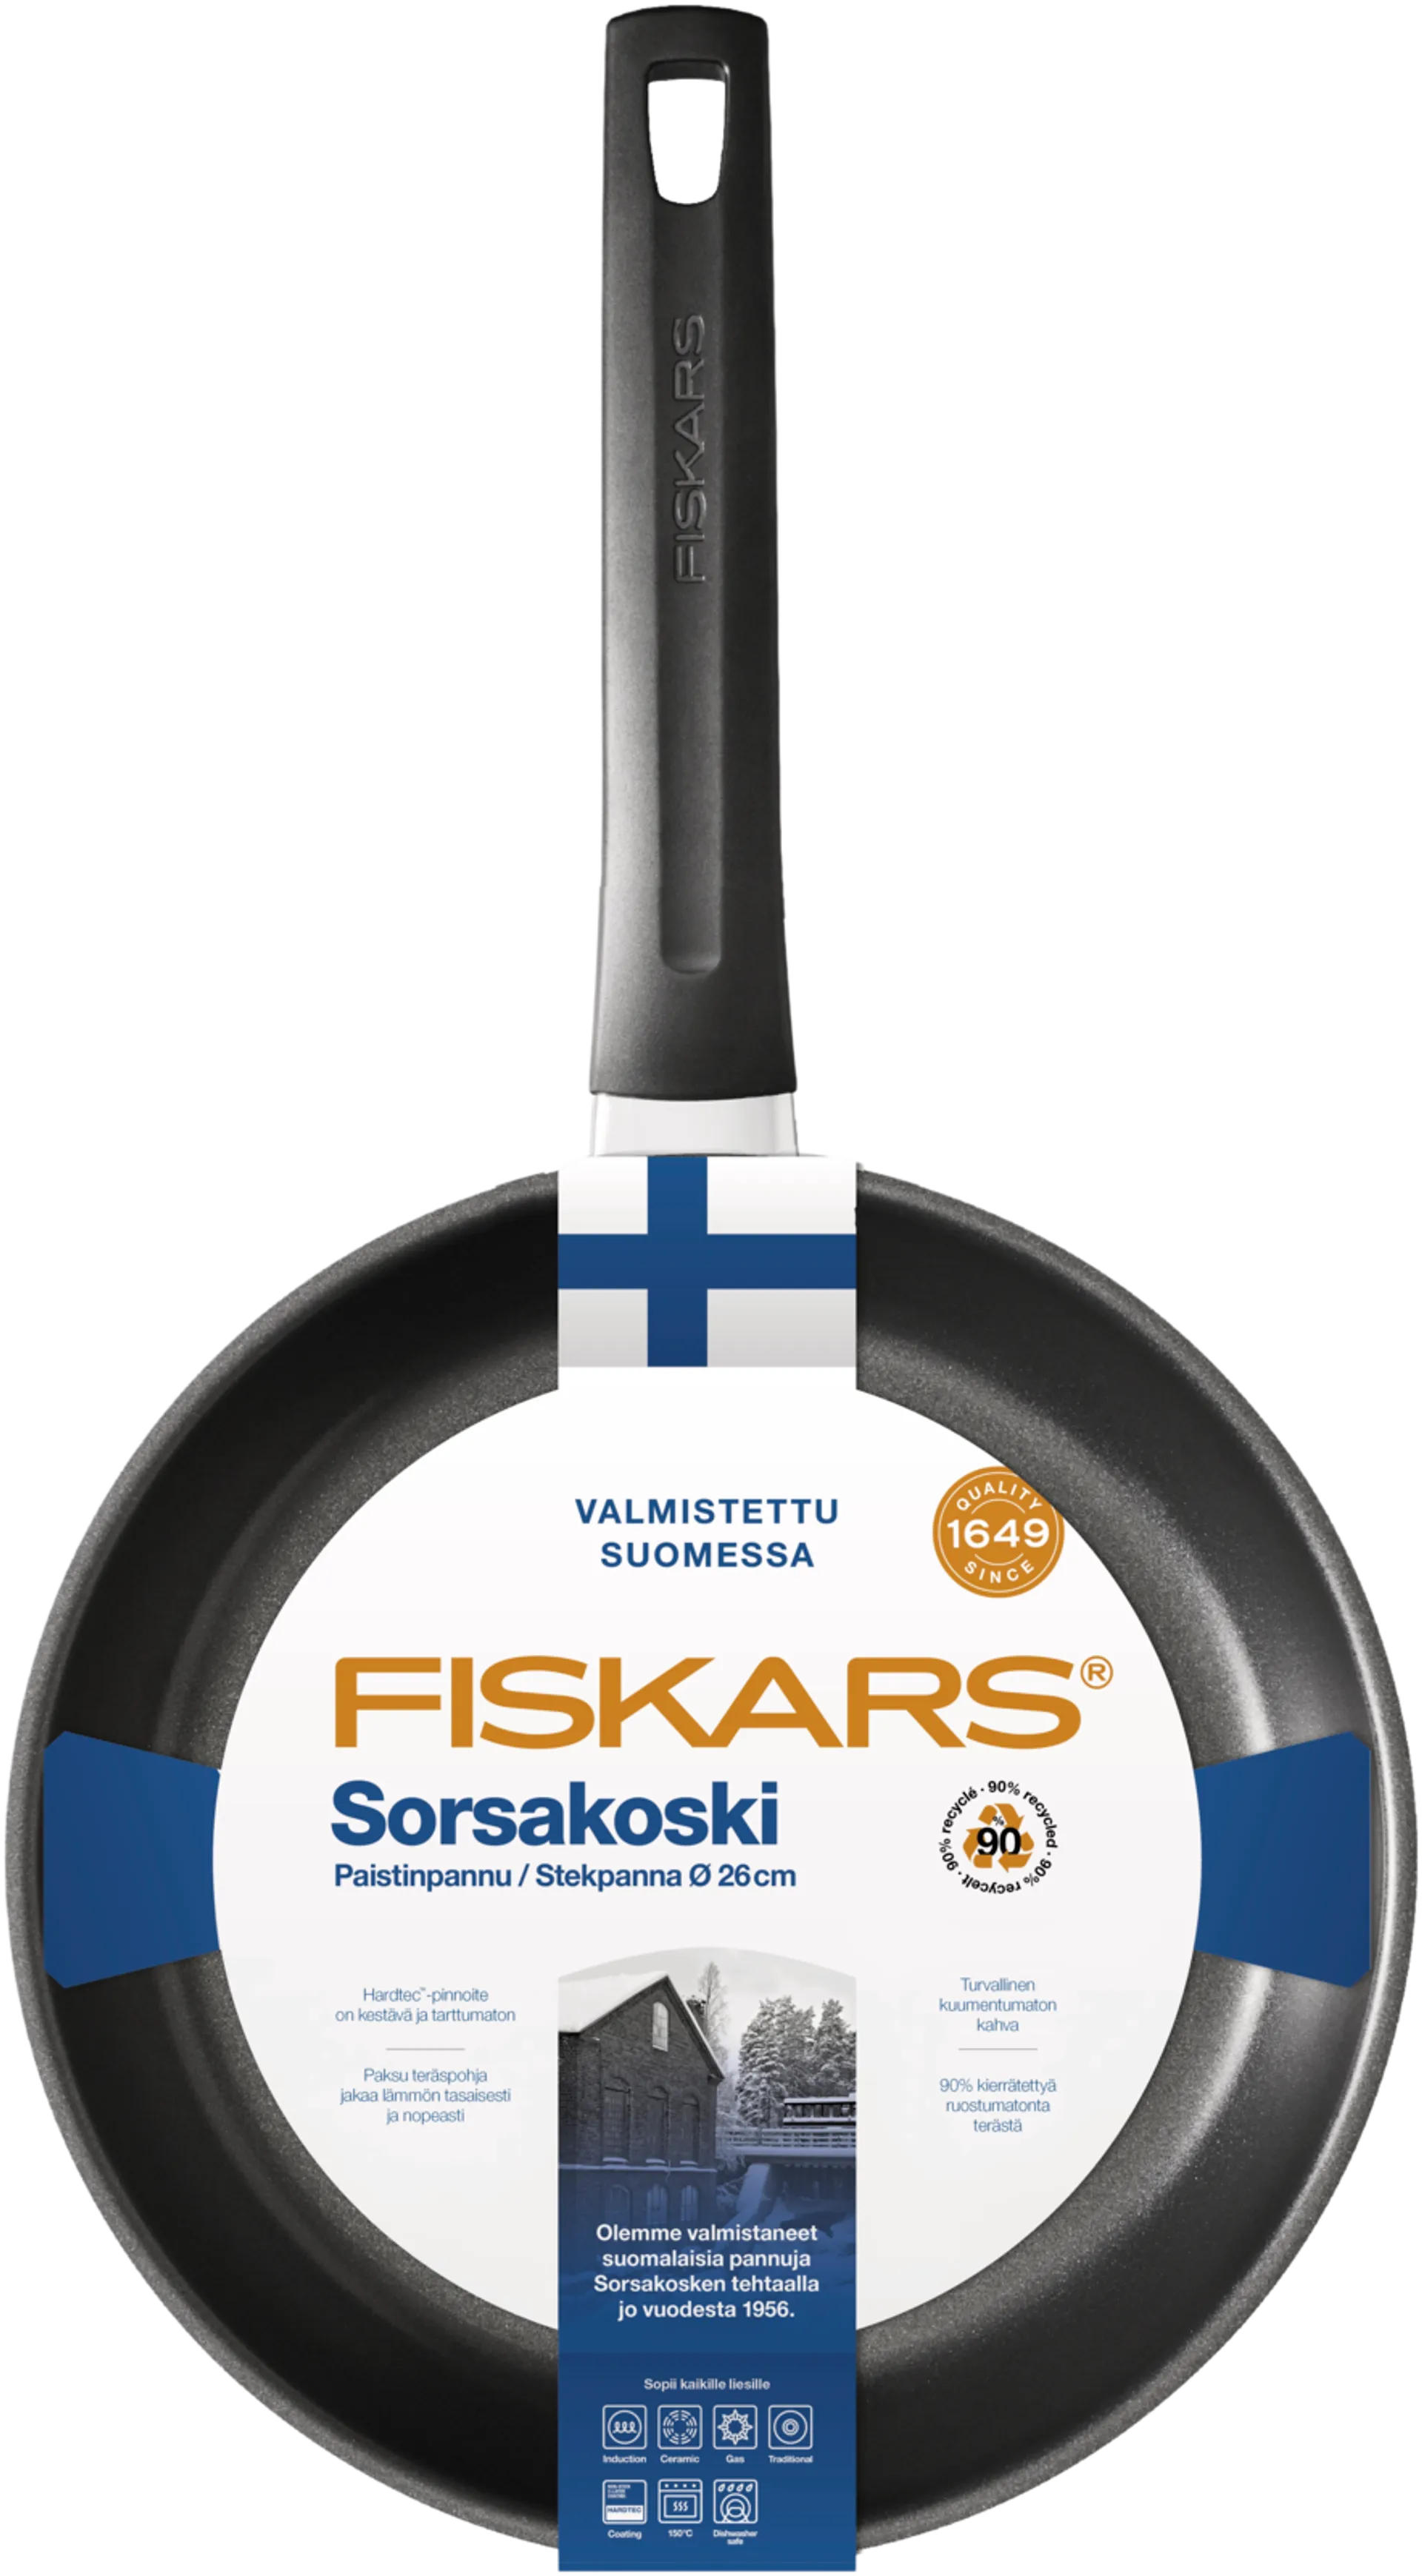 Fiskars Sorsakoski paistinpannu 26cm - 2